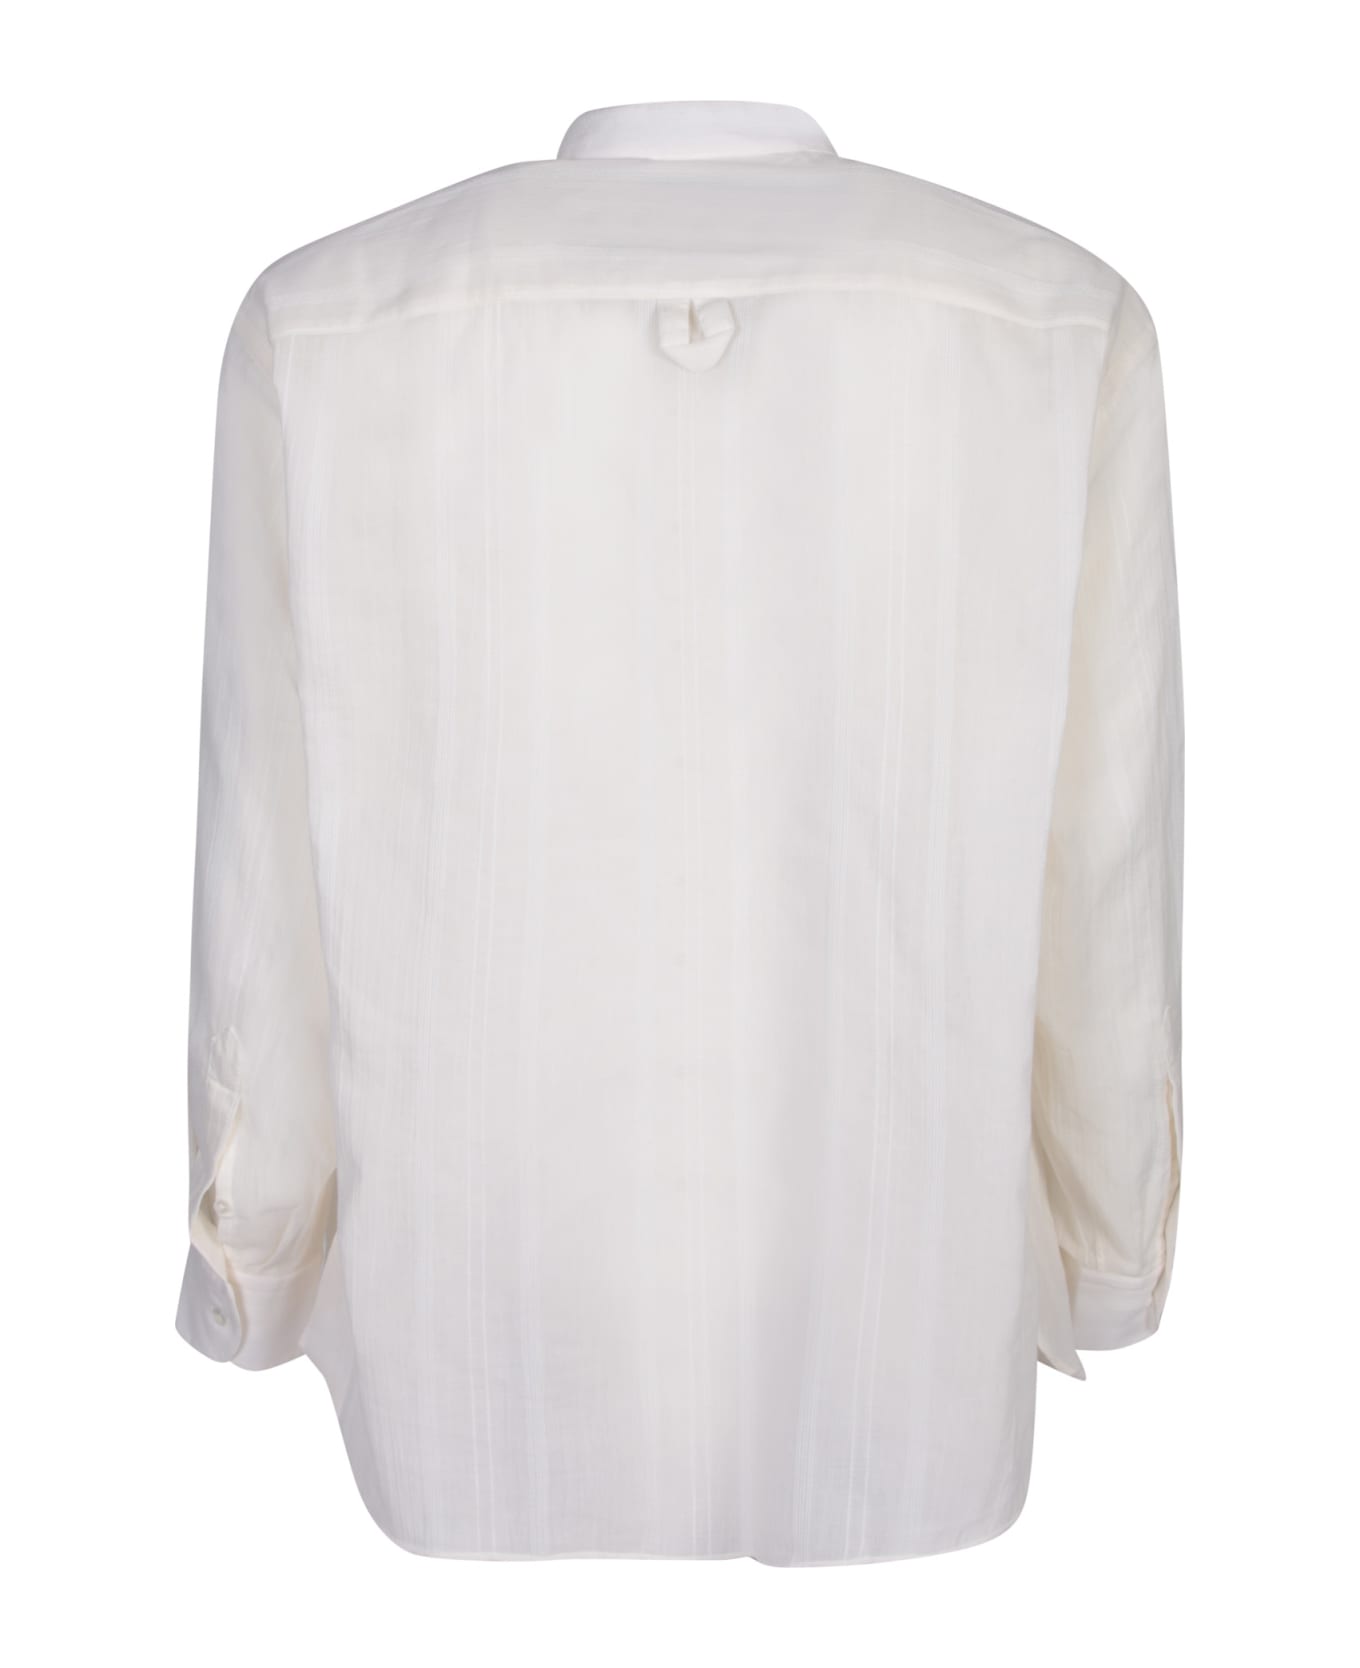 Lardini Tim Striped White Shirt - White